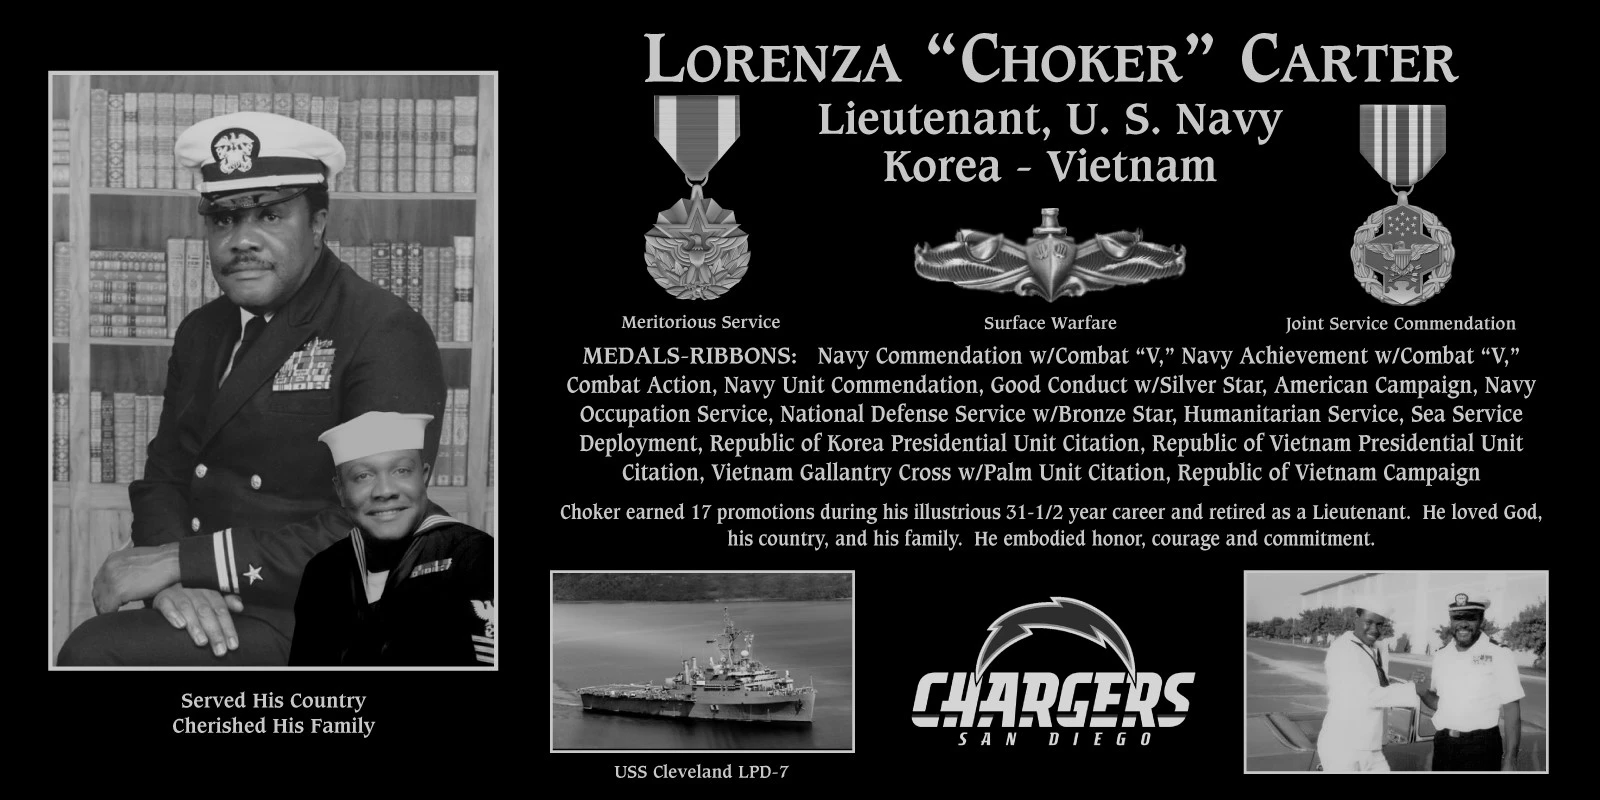 Lorenza “Choker” Carter